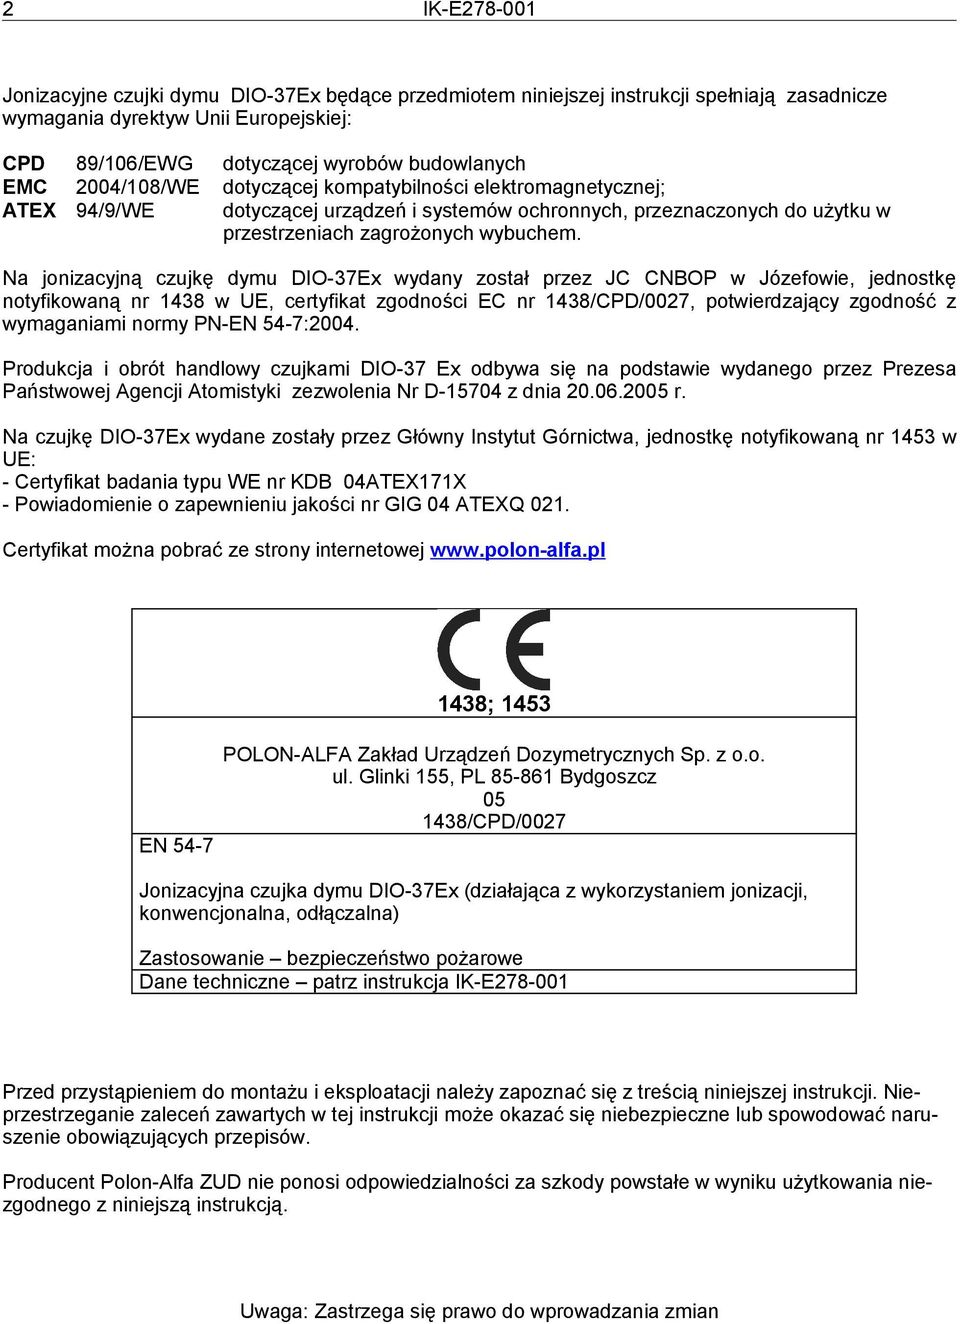 Na jonizacyjną czujkę dymu DIO-37Ex wydany został przez JC CNBOP w Józefowie, jednostkę notyfikowaną nr 1438 w UE, certyfikat zgodności EC nr 1438/CPD/0027, potwierdzający zgodność z wymaganiami